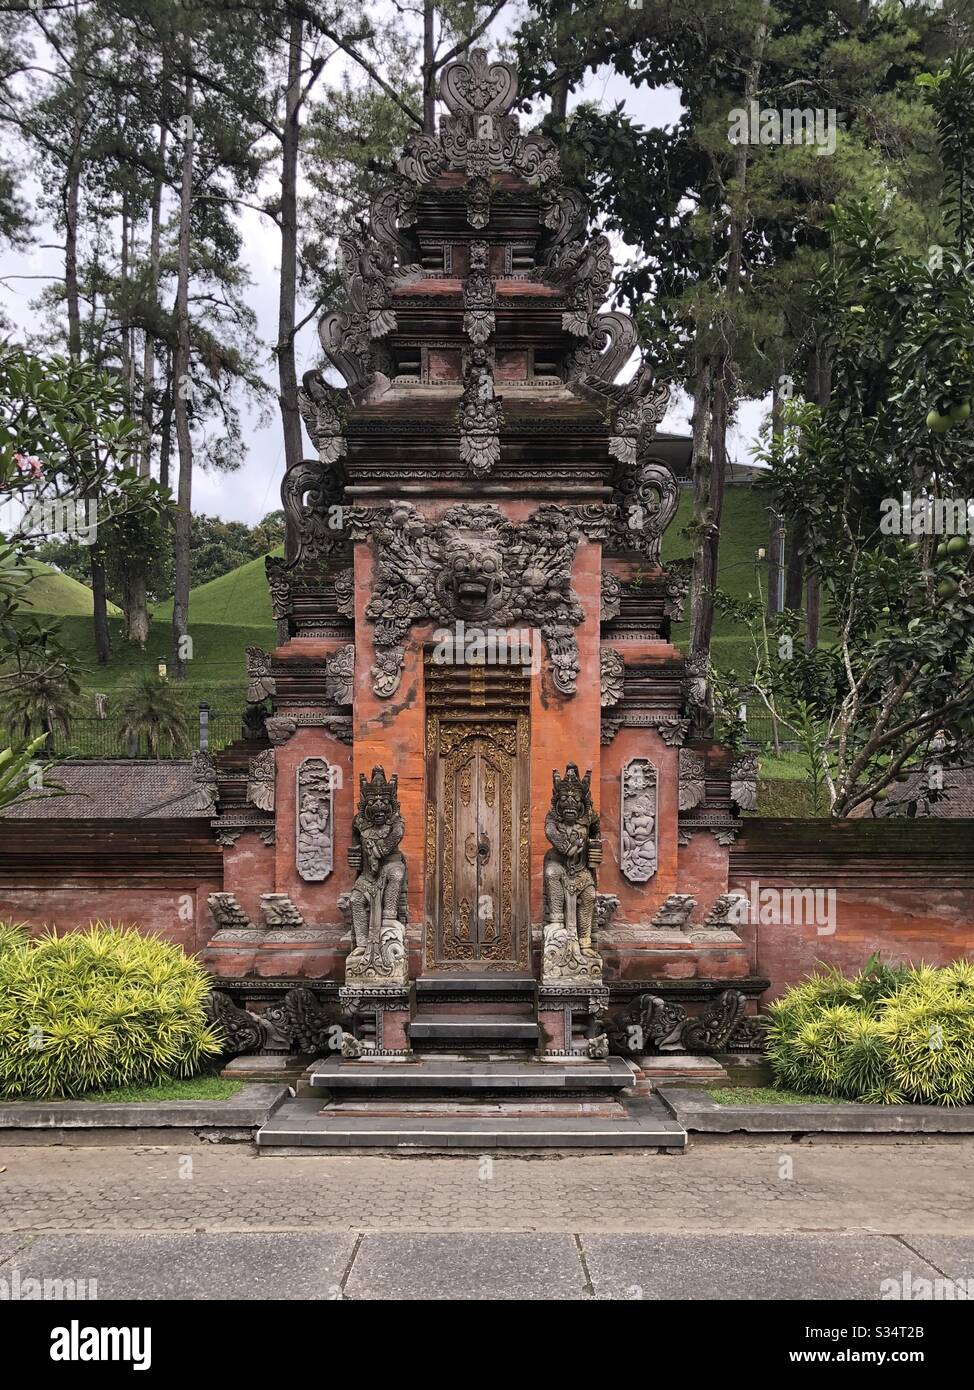 Ein schöner Teil des Tempels von Tirta empul auf Bali, Indonesien. Stockfoto